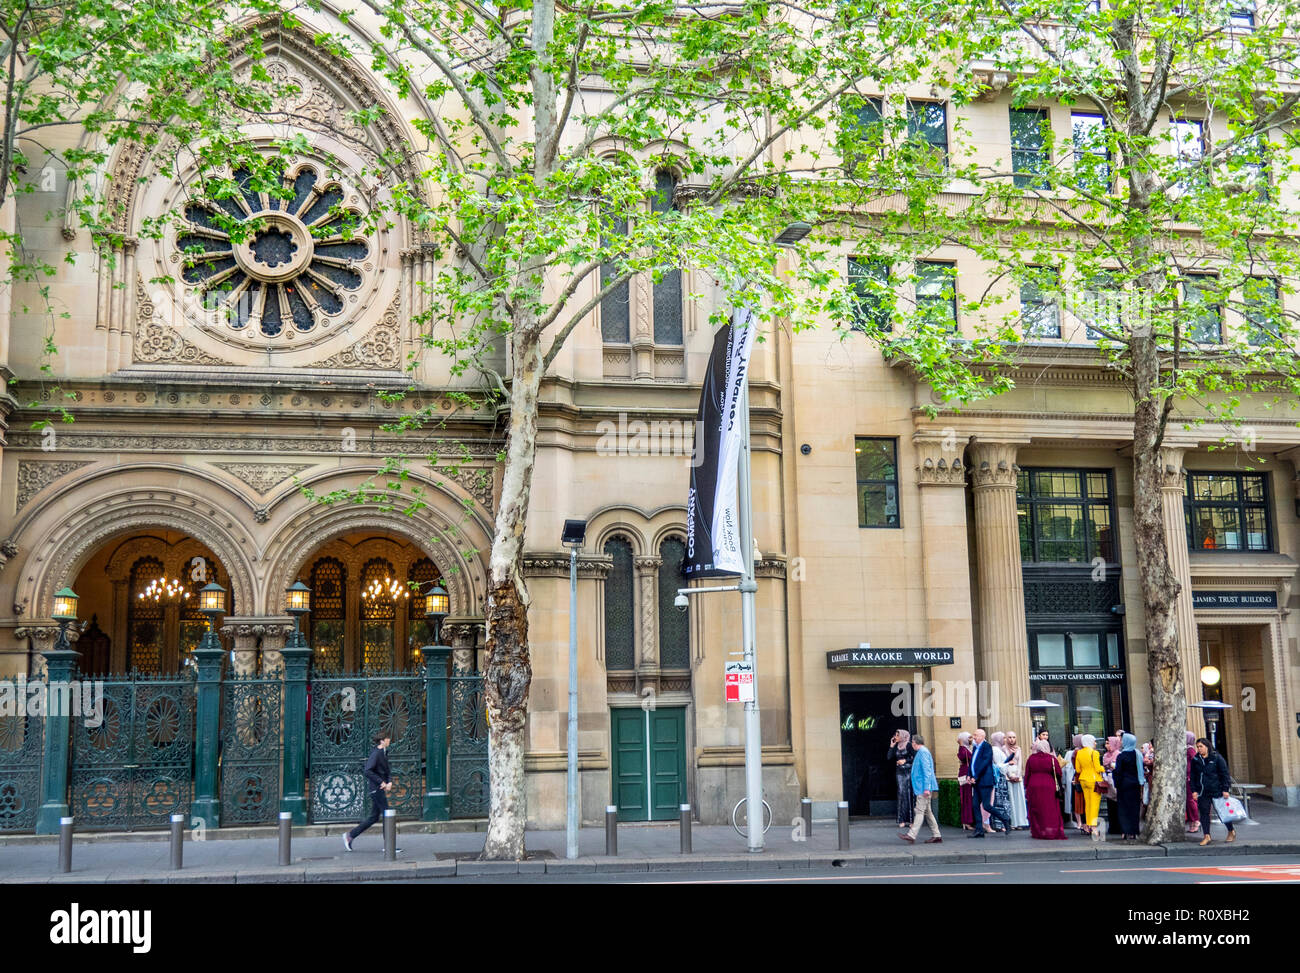 Gruppe von muslimischen Frauen von London Platanen vor der Großen Synagoge von Sydney Elizabeth Street NSW Australien stehen. Stockfoto